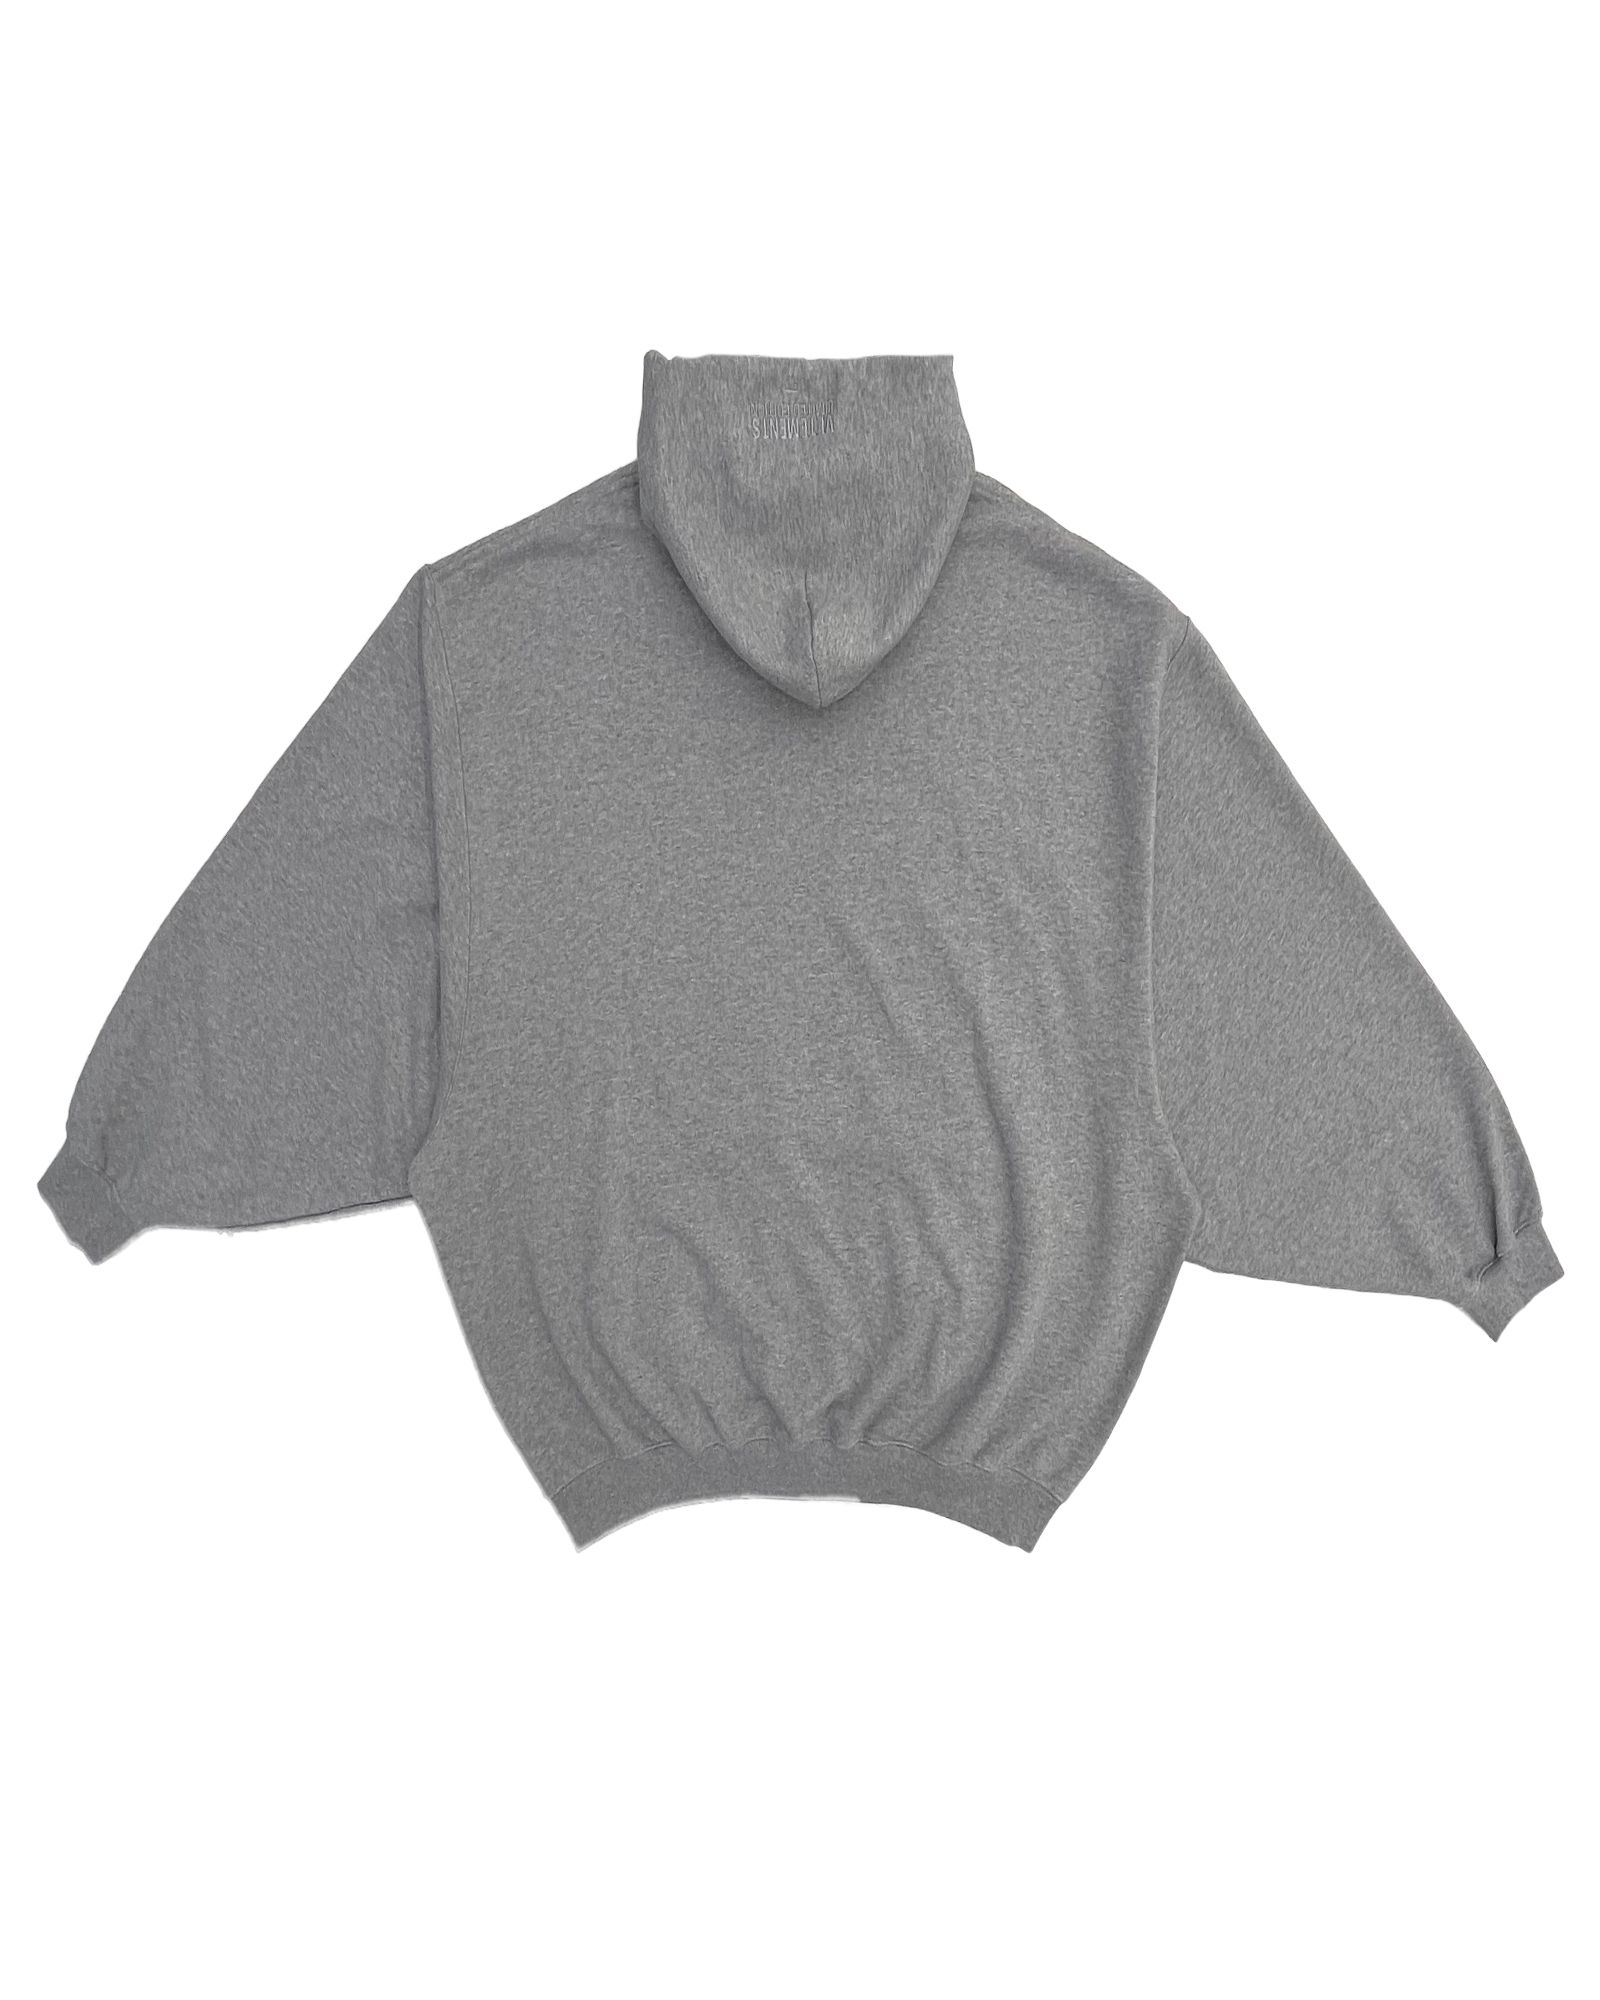 ヴェトモン/Flag logo hoodie/プルオーバーパーカー/Grey - S